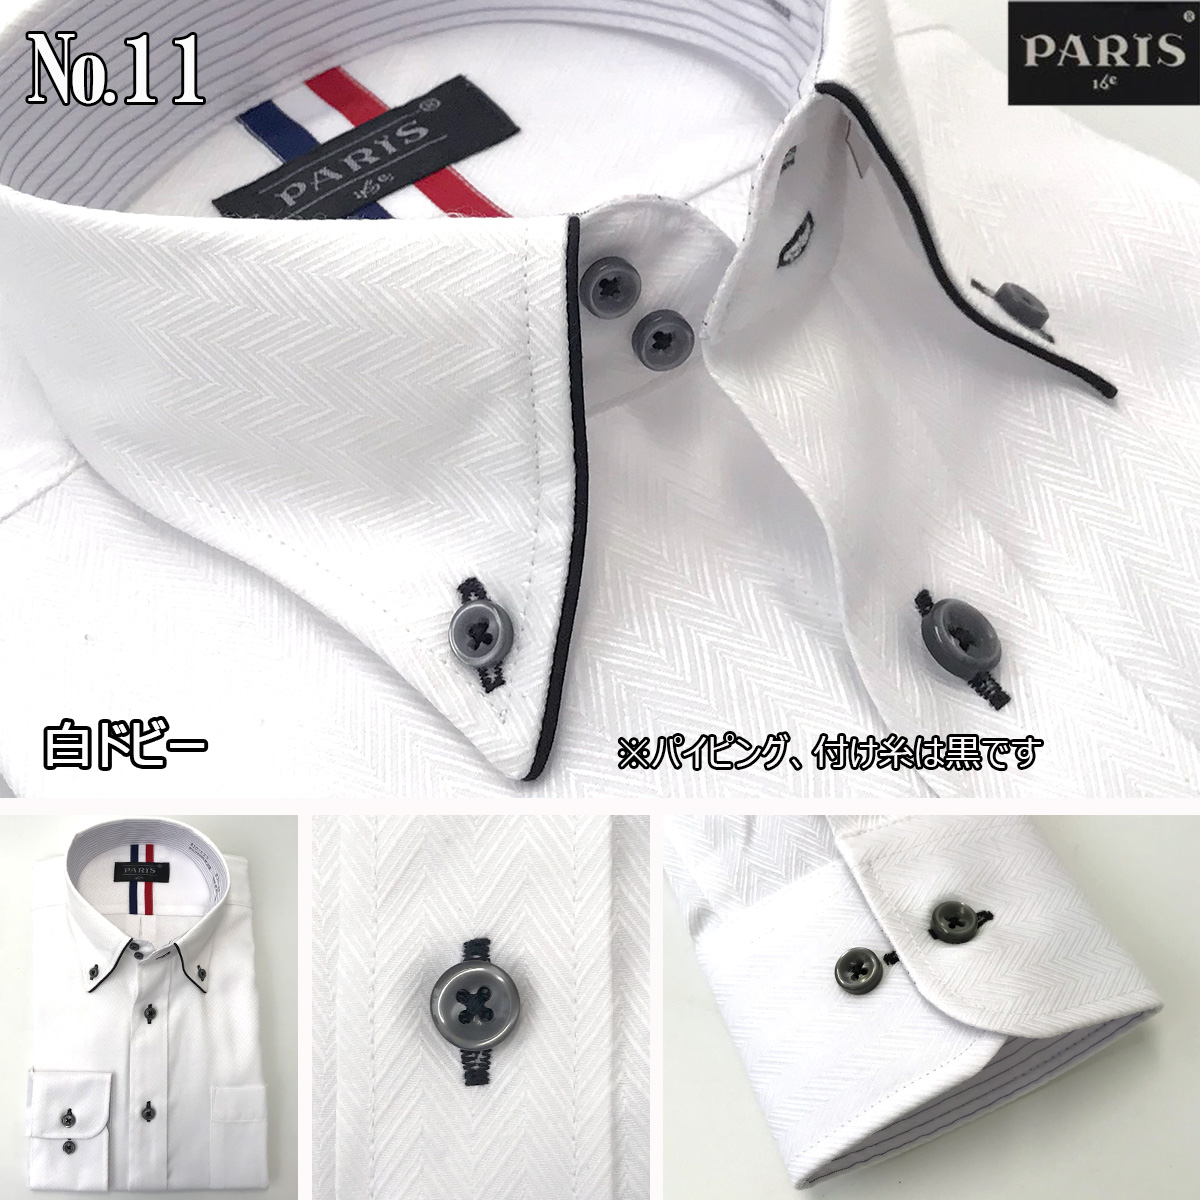 ワイシャツ 長袖 メンズ 形態安定 Yシャツ ボタンダウン 白 ホワイト ストライプ M L LL 単品 メール便送料無料